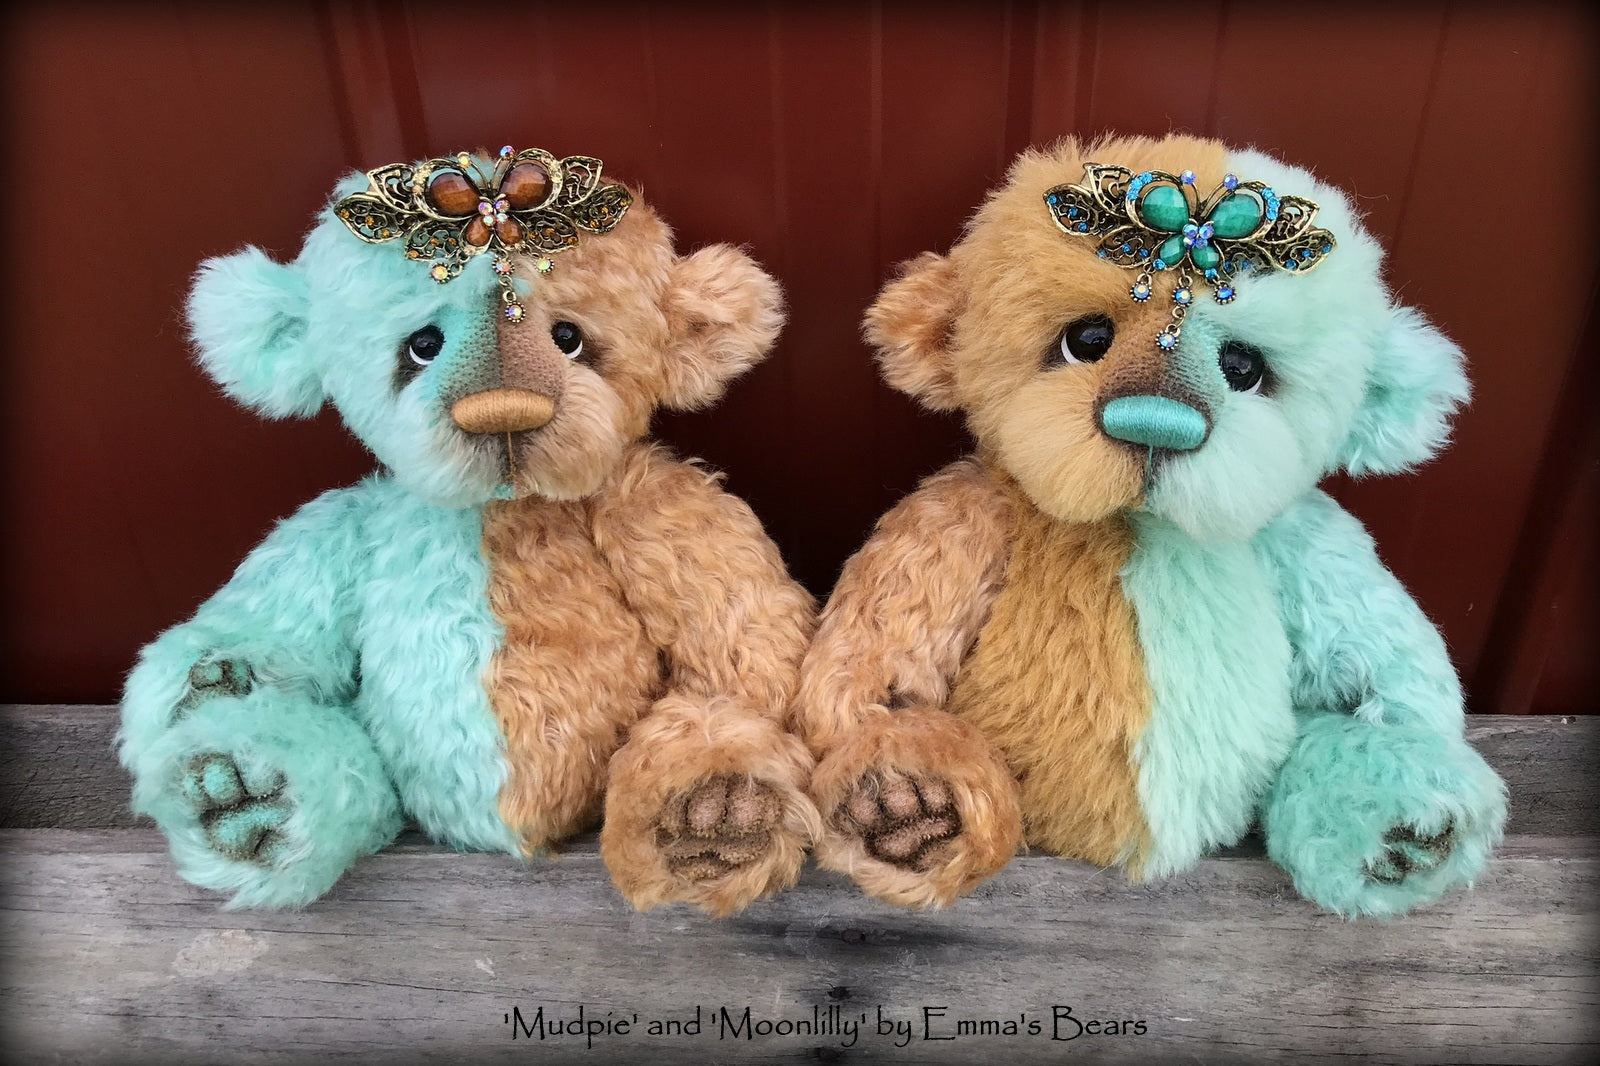 Mudpie - 10" Mohair artist bear by Emma's Bears - OOAK